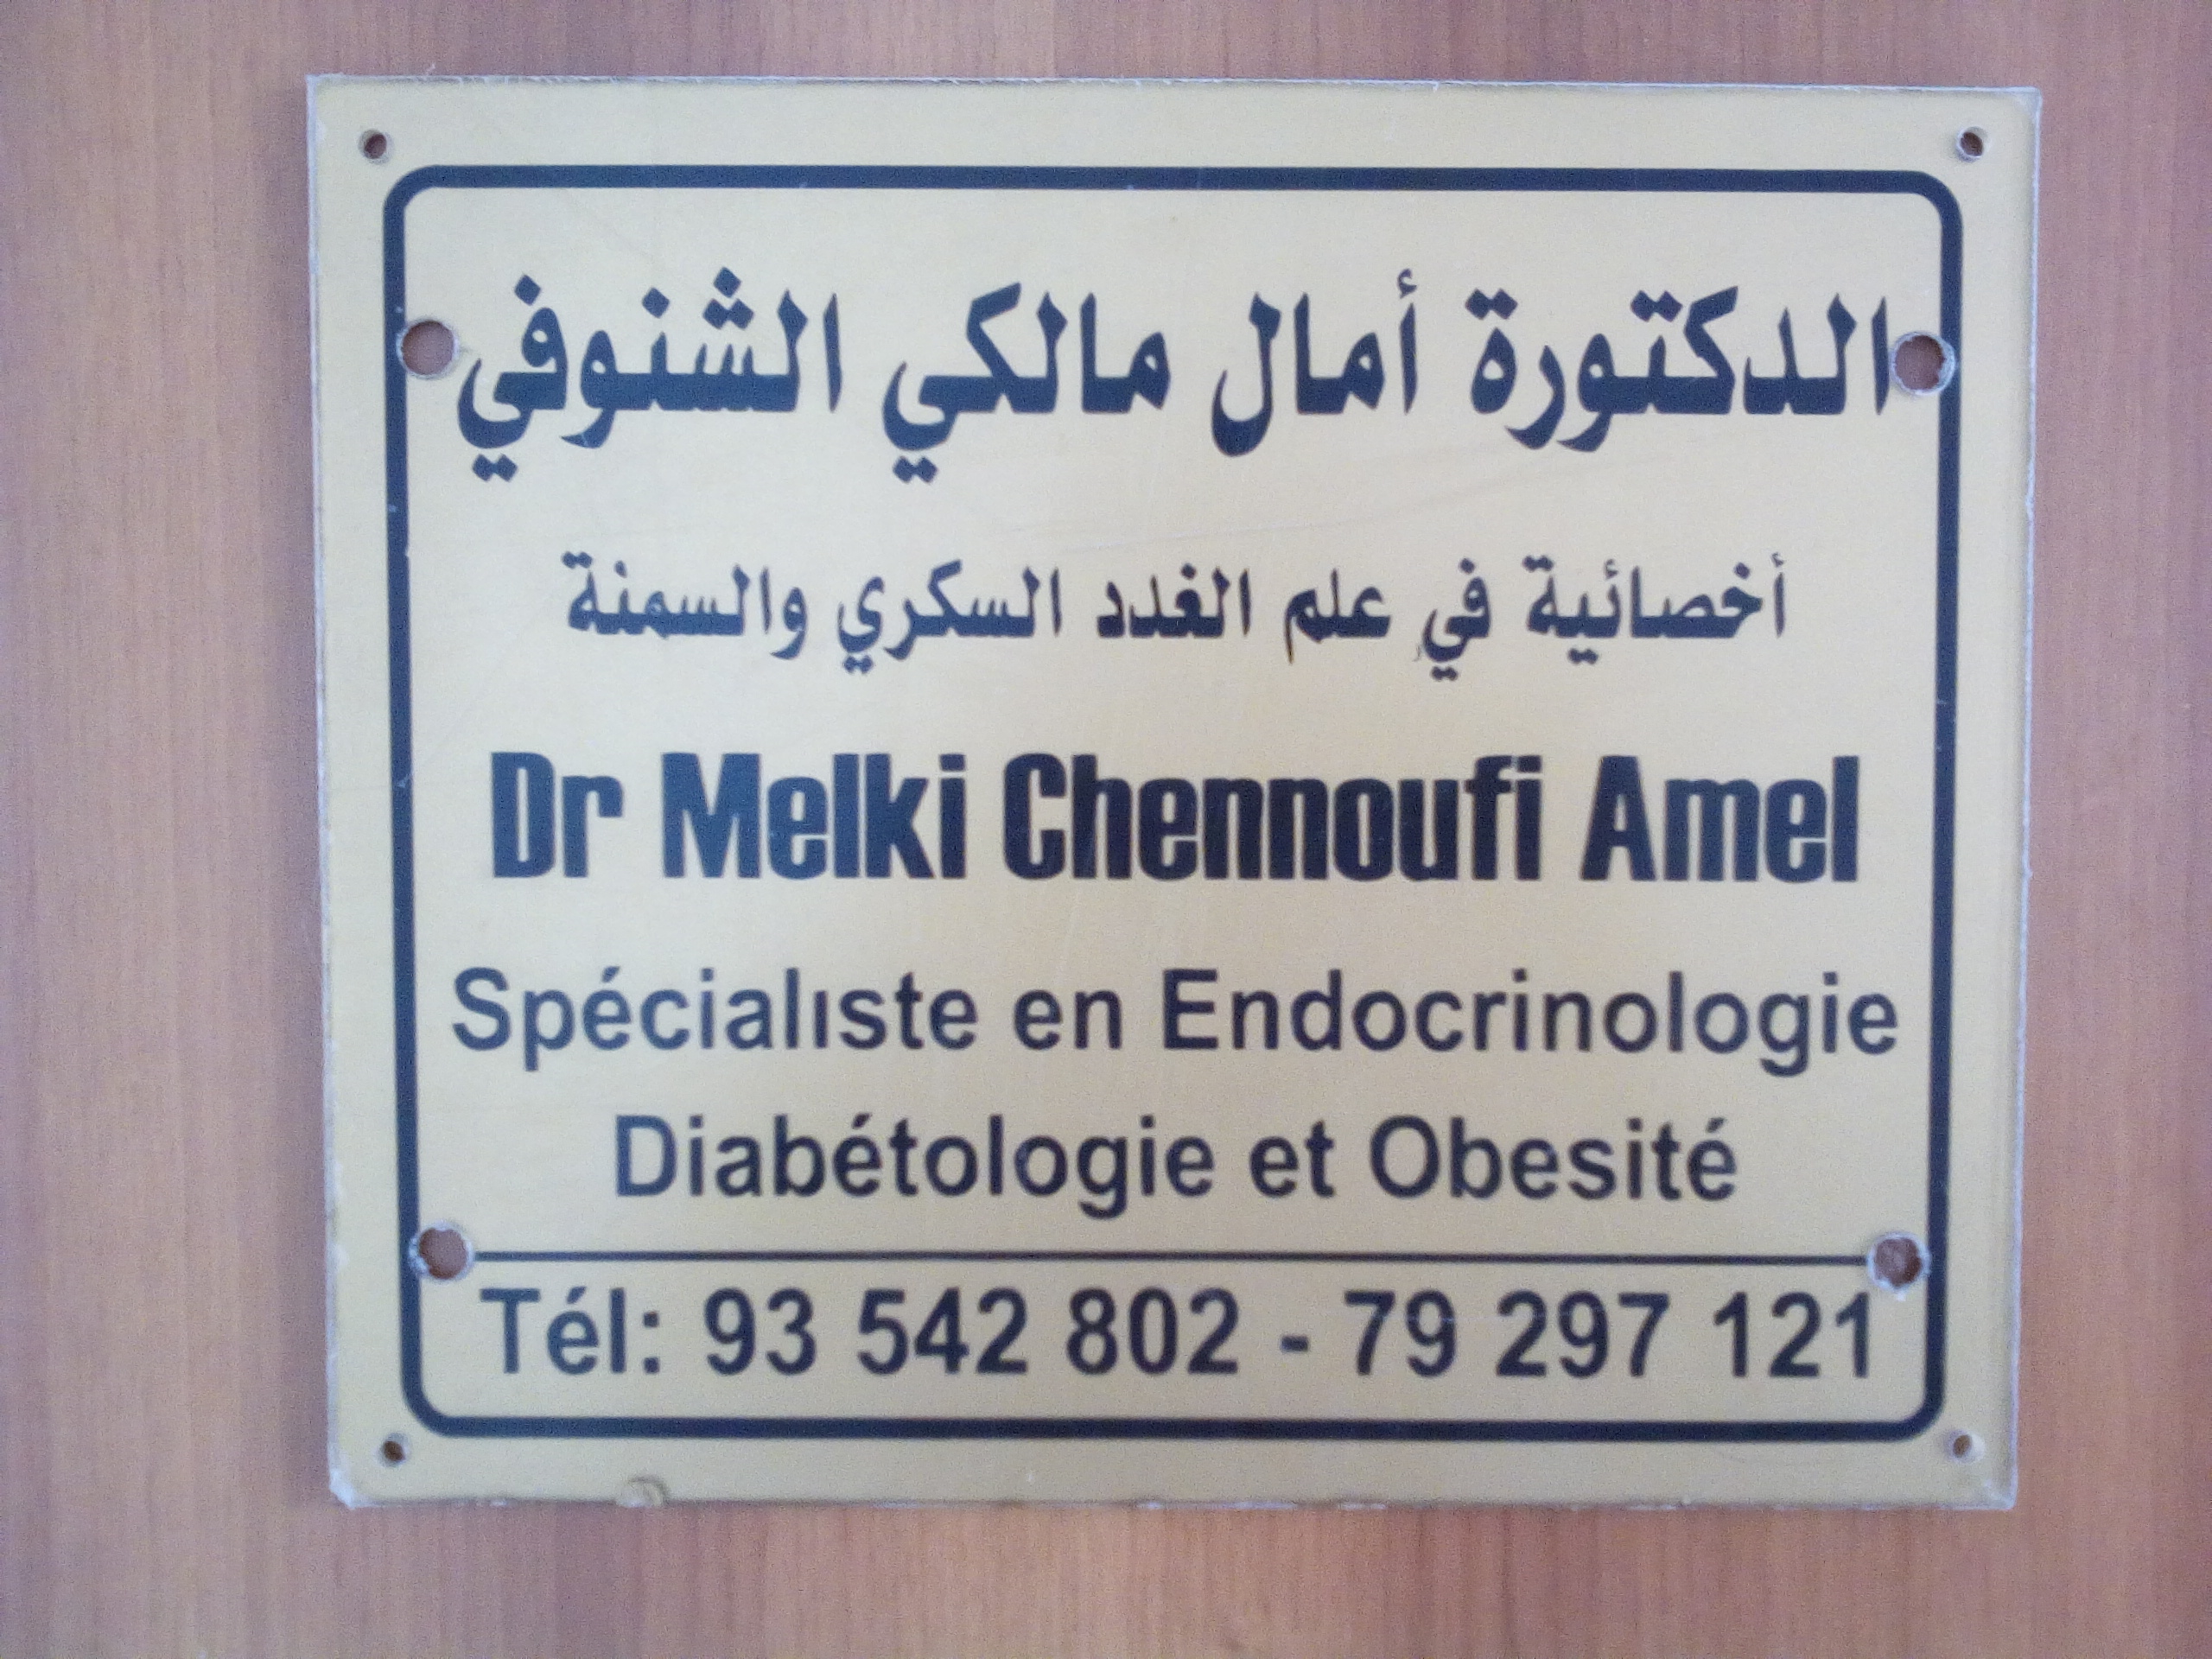 Melki Chennoufi